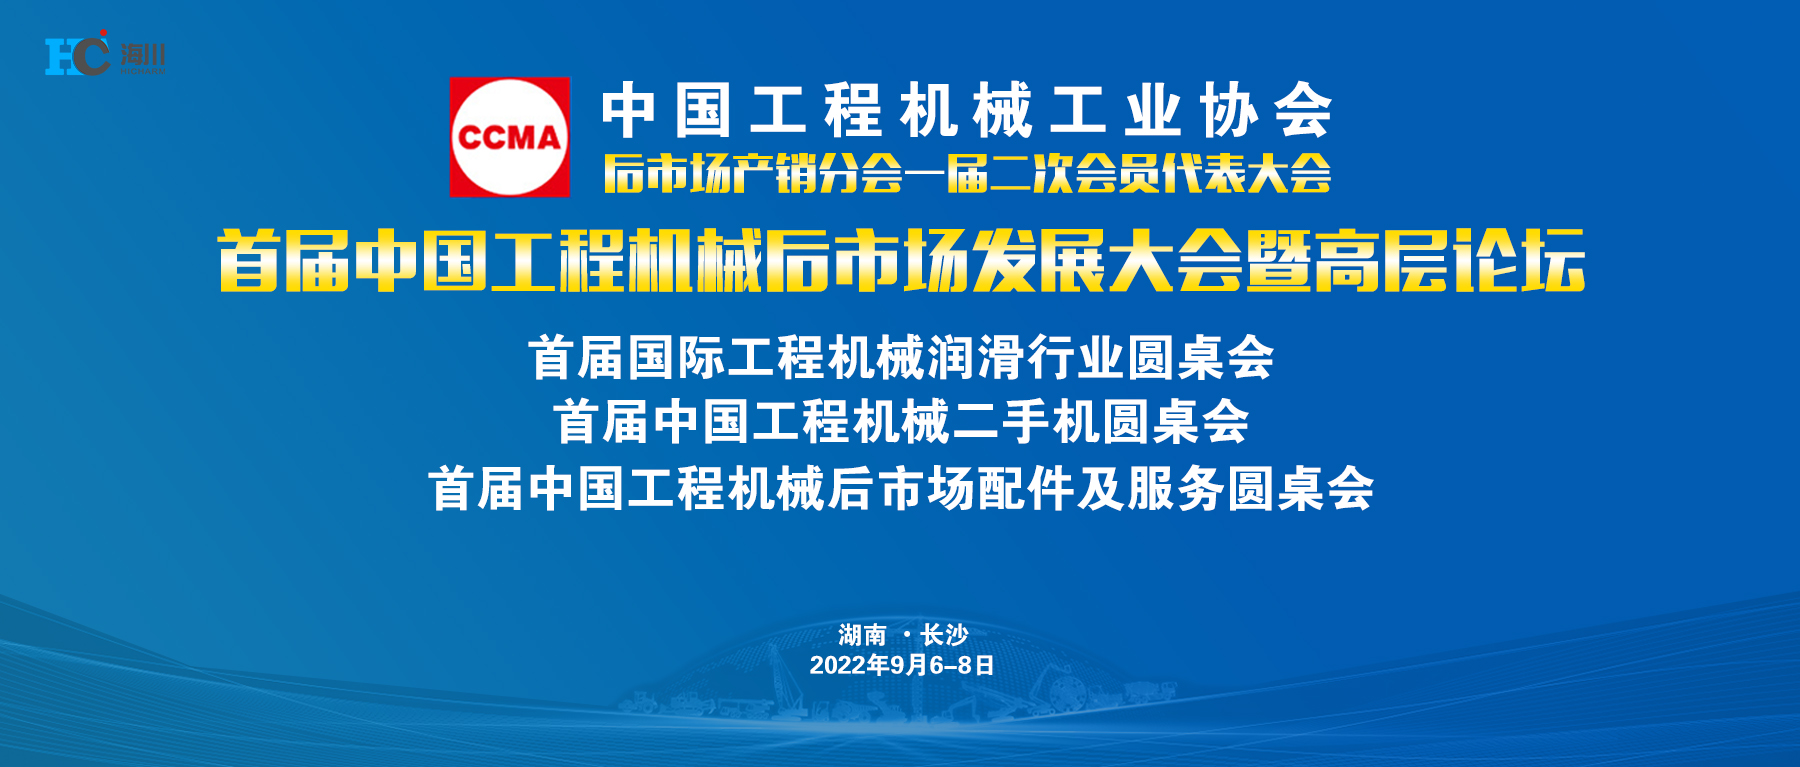 长沙海川参加首届中国工程机械后市场发展大会暨高层论坛